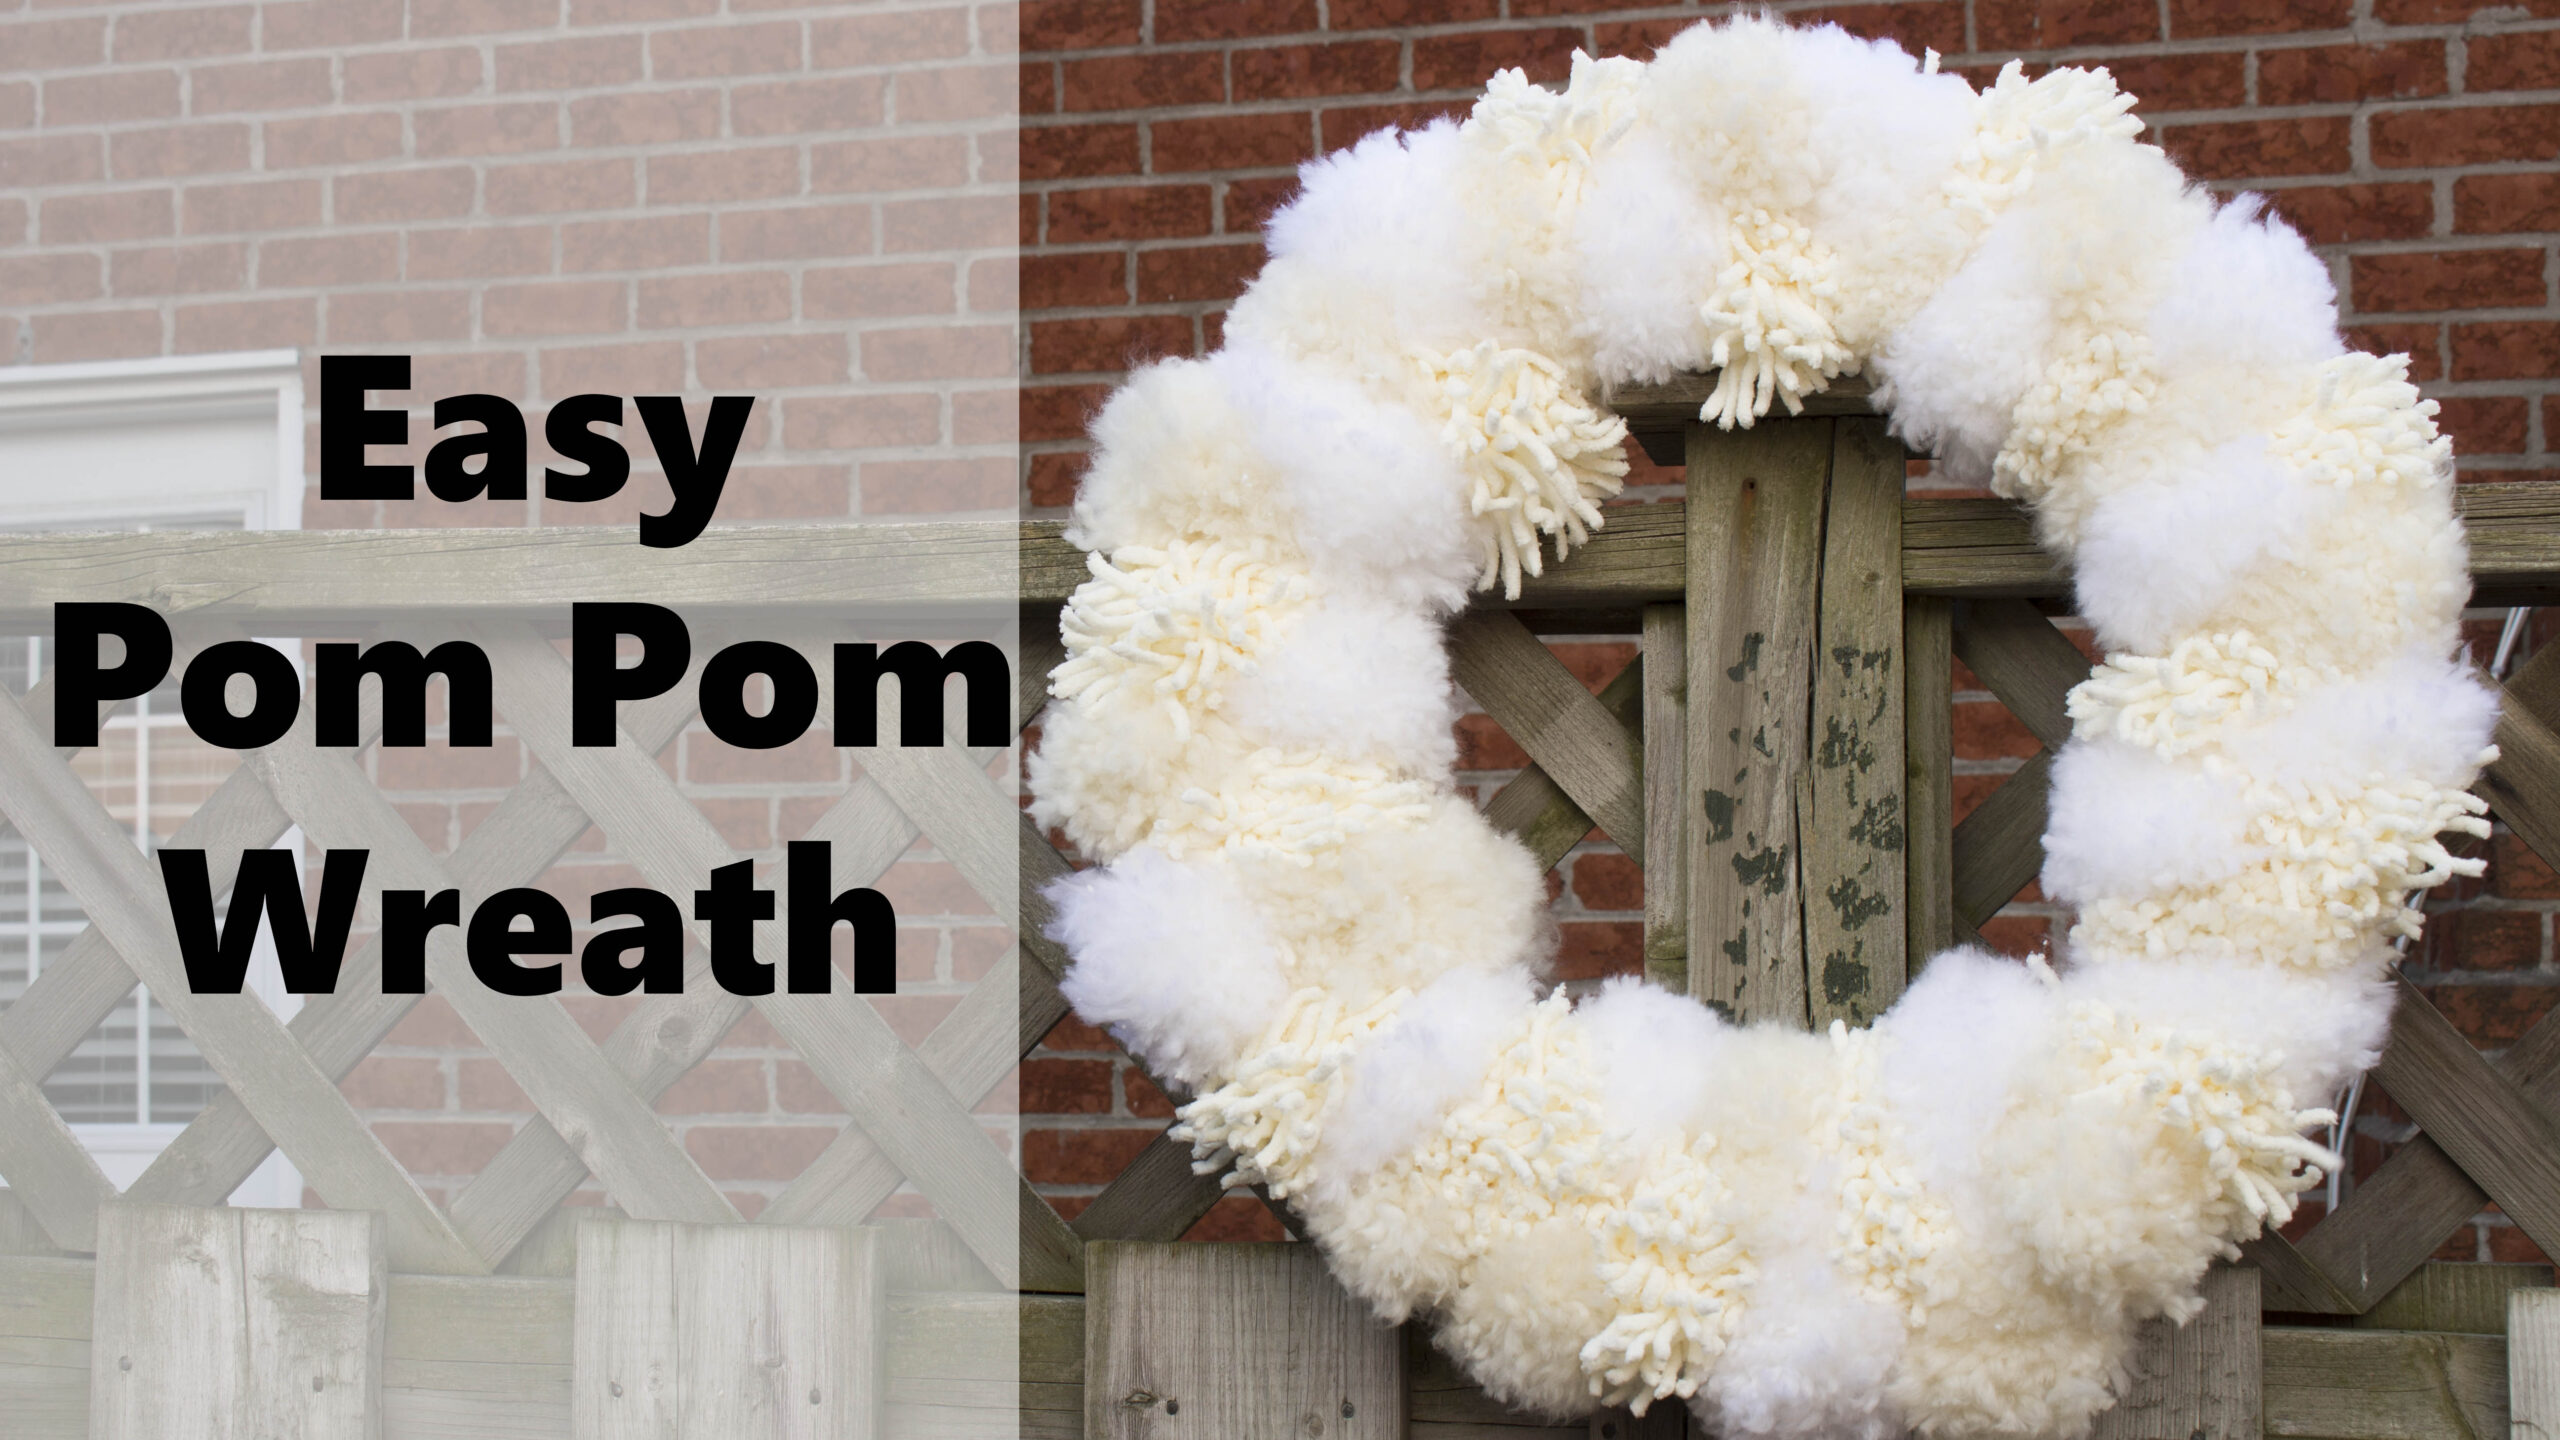 Pom Pom Wreath tutorial